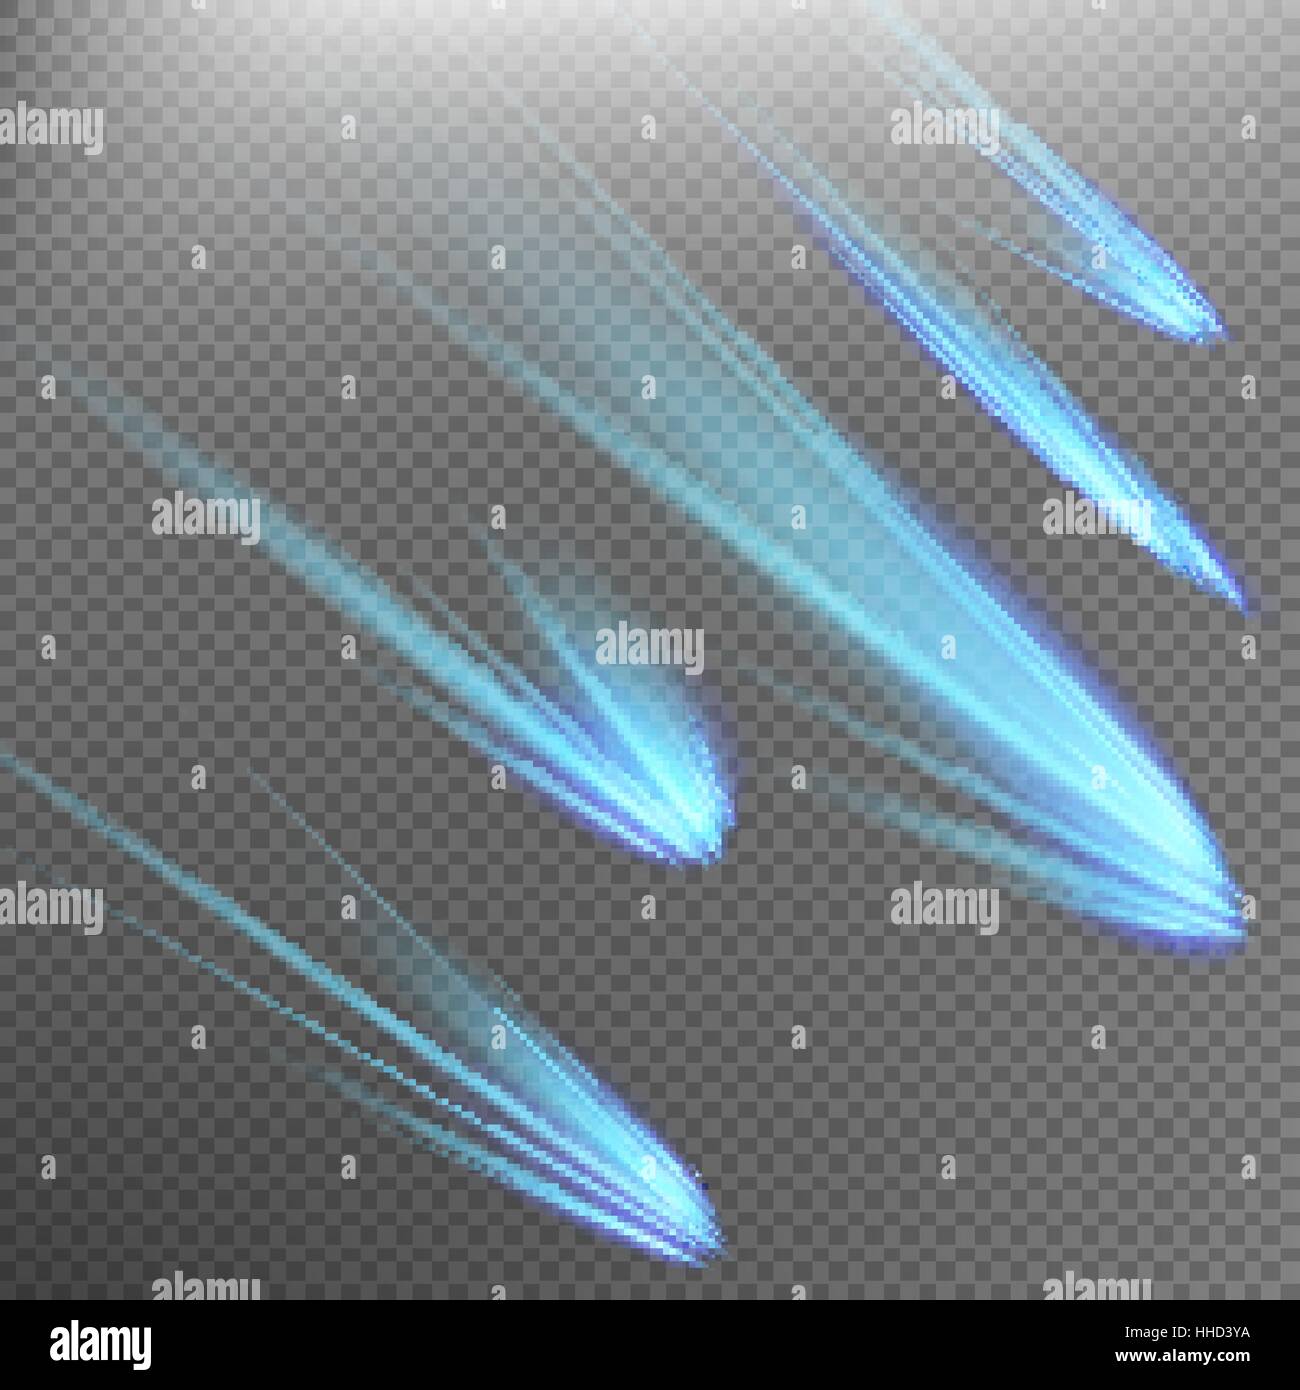 Reihe von blauen Meteor oder Kometen. EPS 10 Stock Vektor